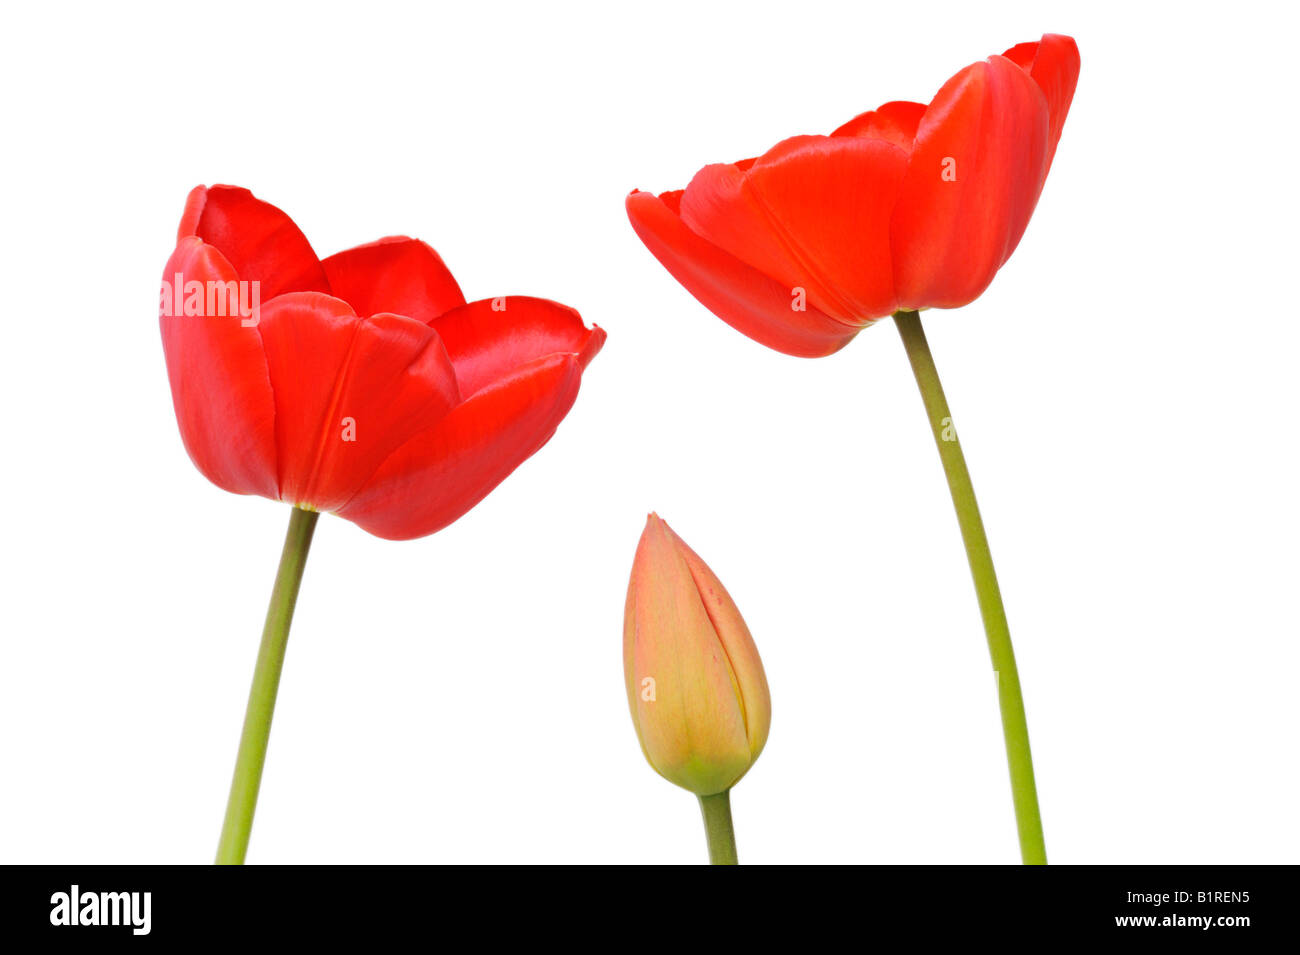 Red Tulips (Tulipa) Stock Photo